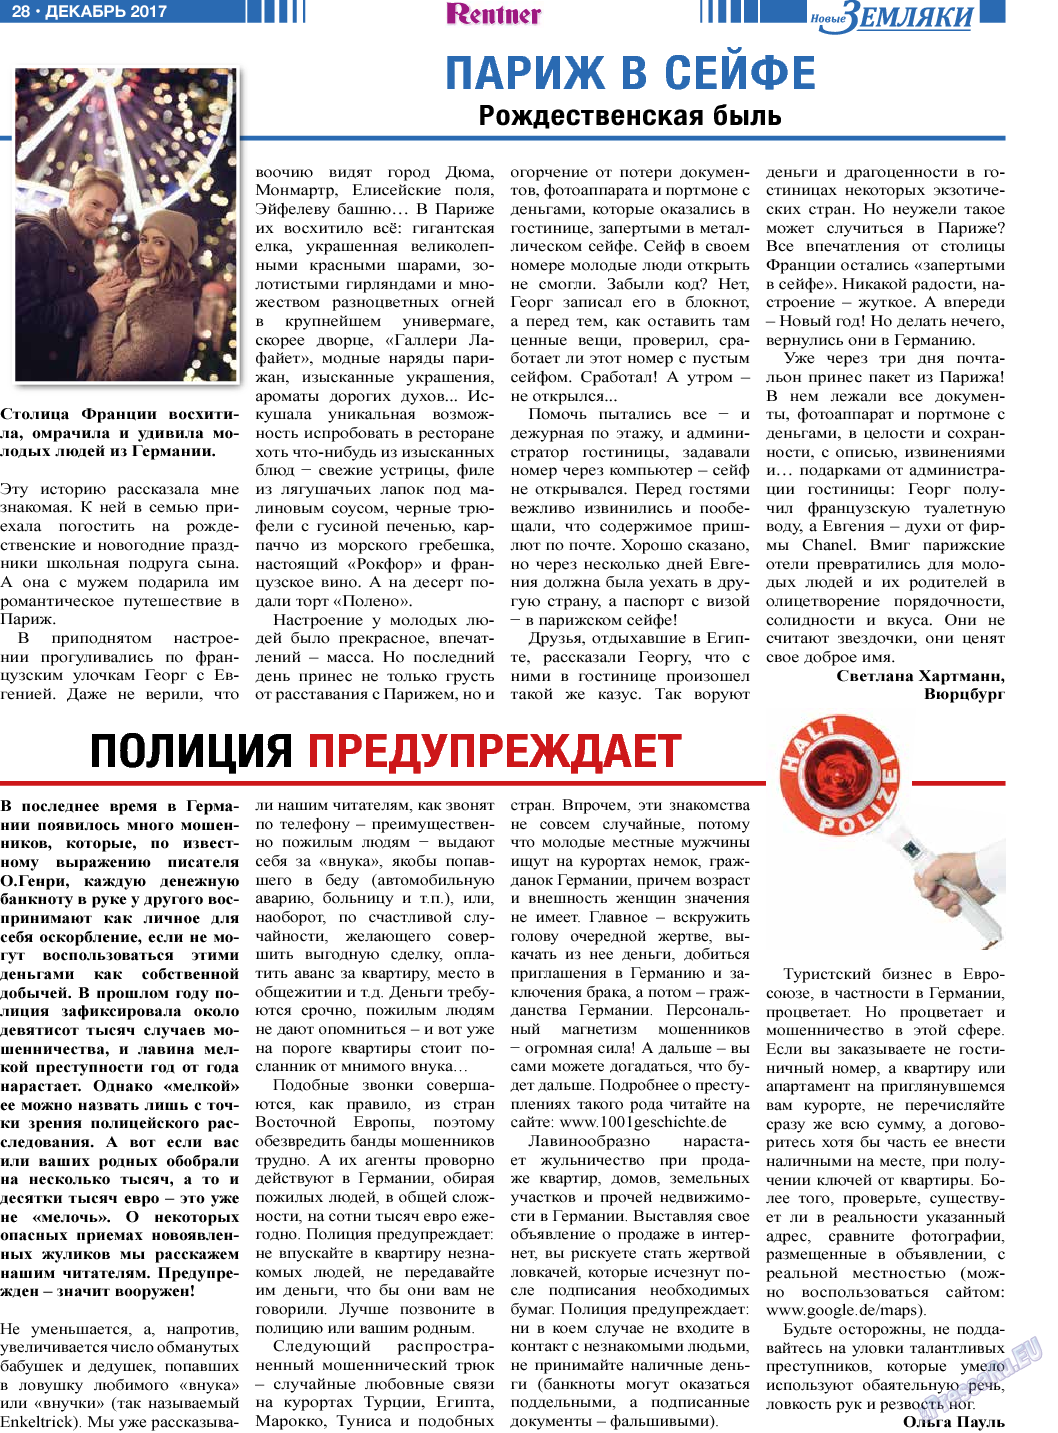 Новые Земляки, газета. 2017 №12 стр.28